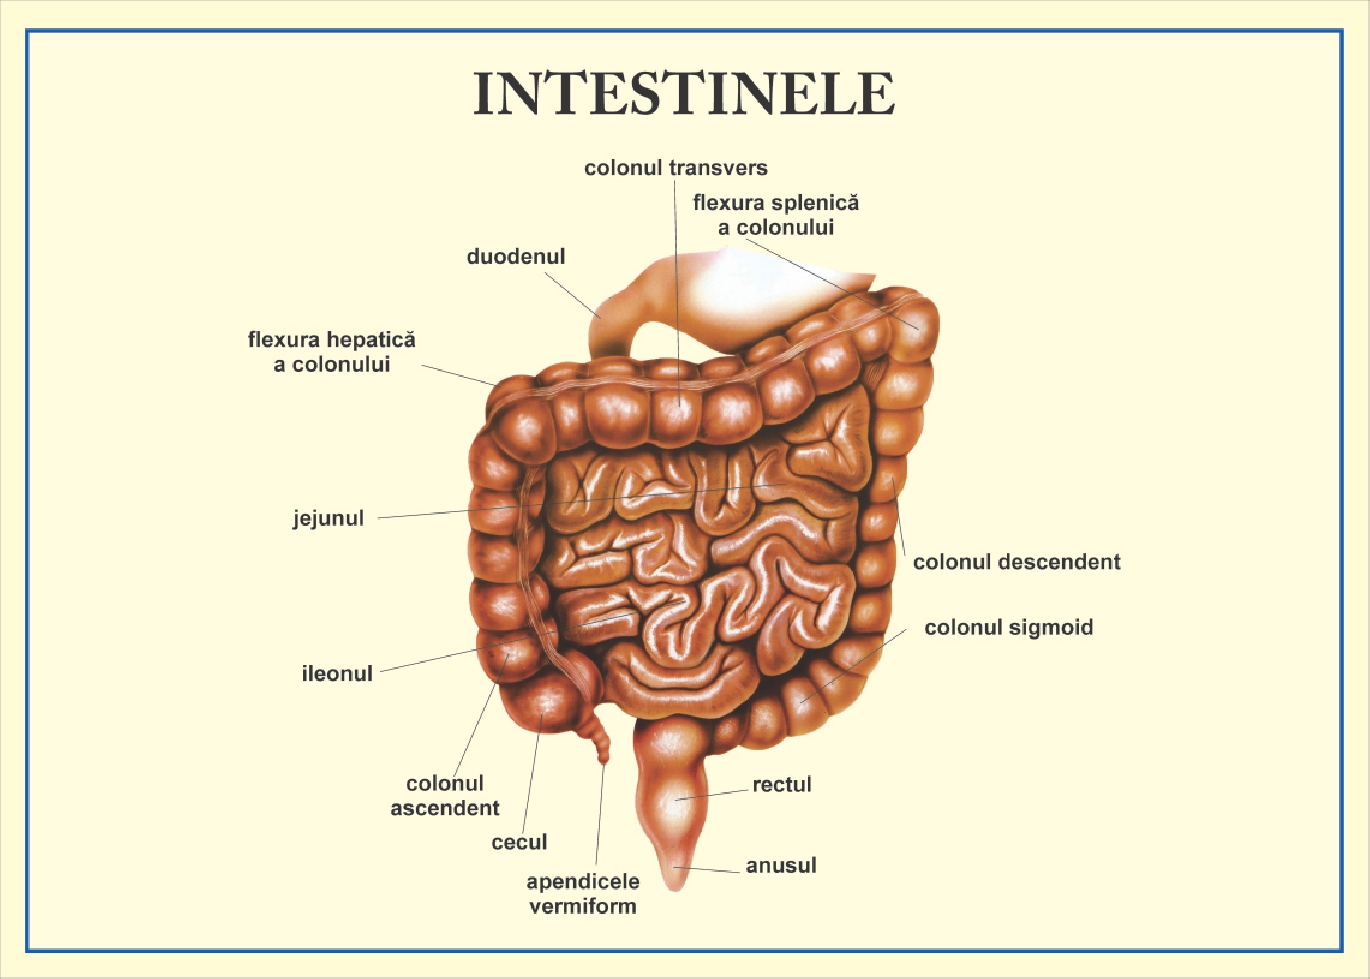 Intestinele